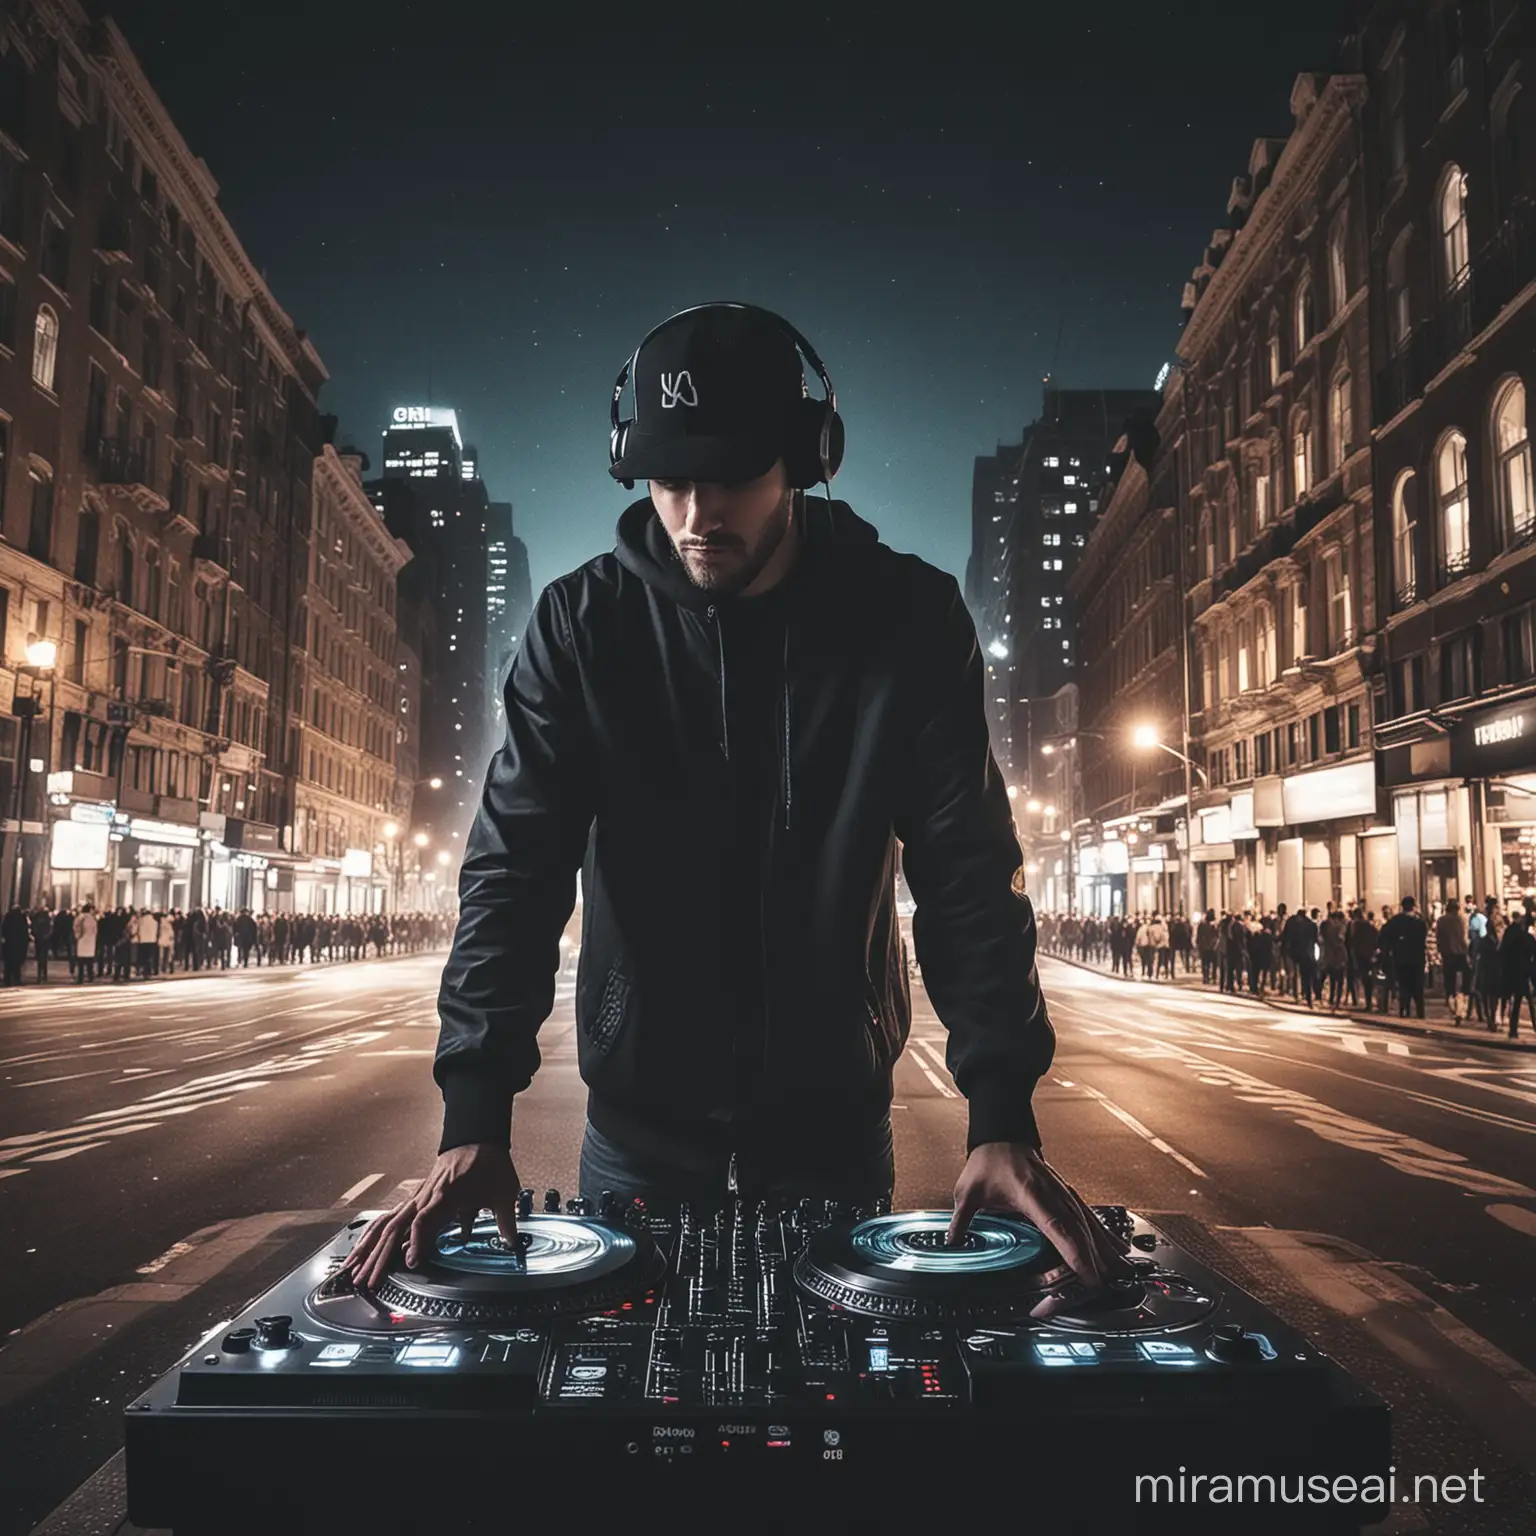 Vibrant City Nightlife DJ Spinning Beats Amid Urban Lights